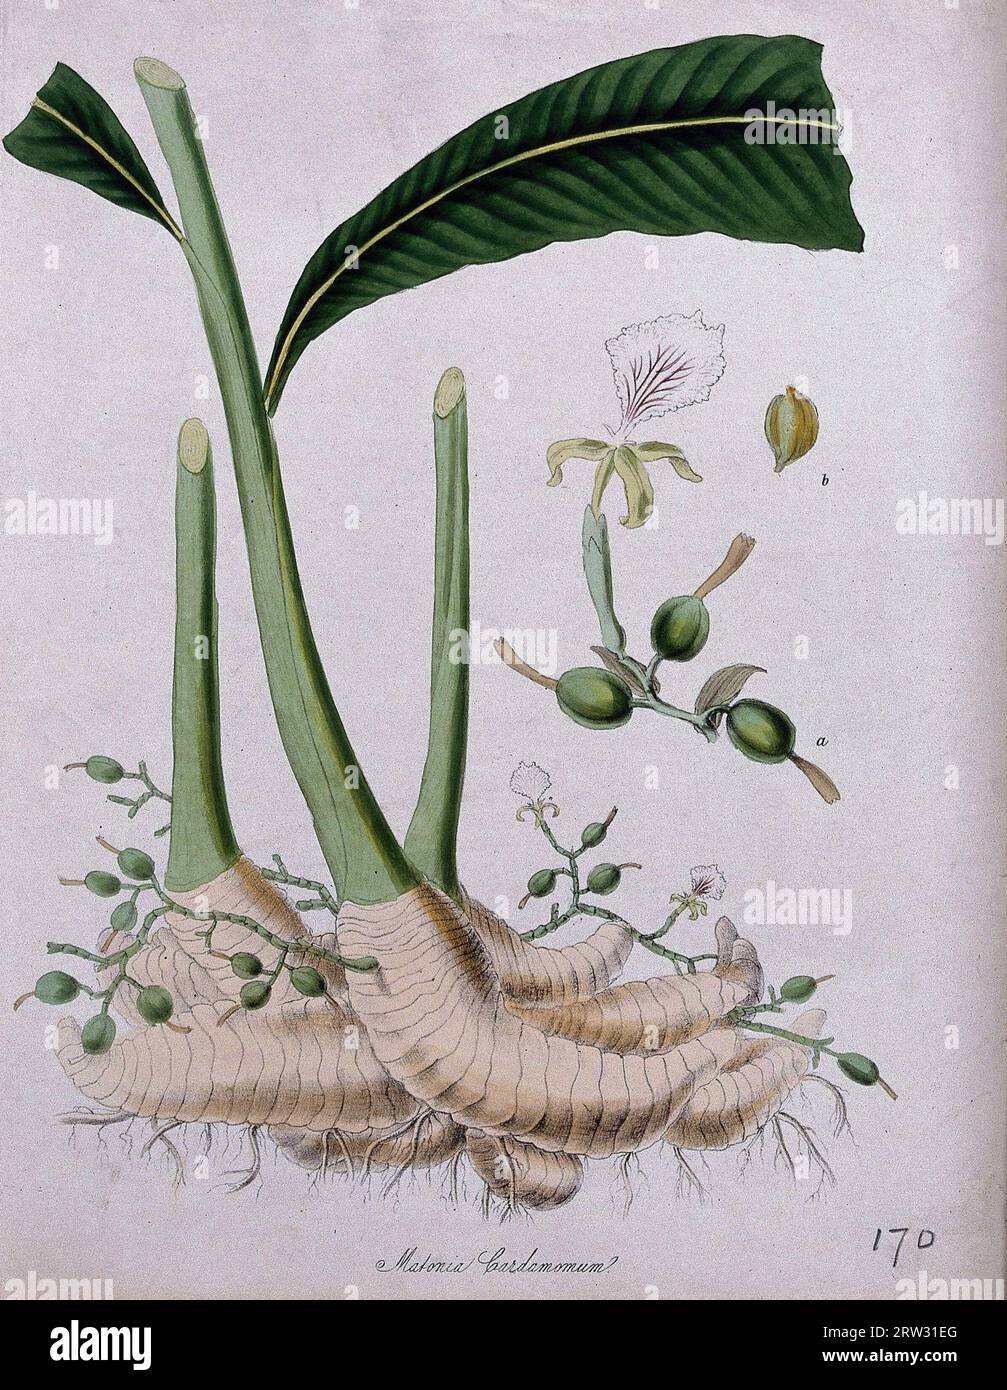 Plante de cardamome (Elettaria cardamomum), porte-greffe germant des tiges feuillées et fleuries, et fleur séparée. Lithographie colorée d'après M. A. Burnett, c.1847. Banque D'Images